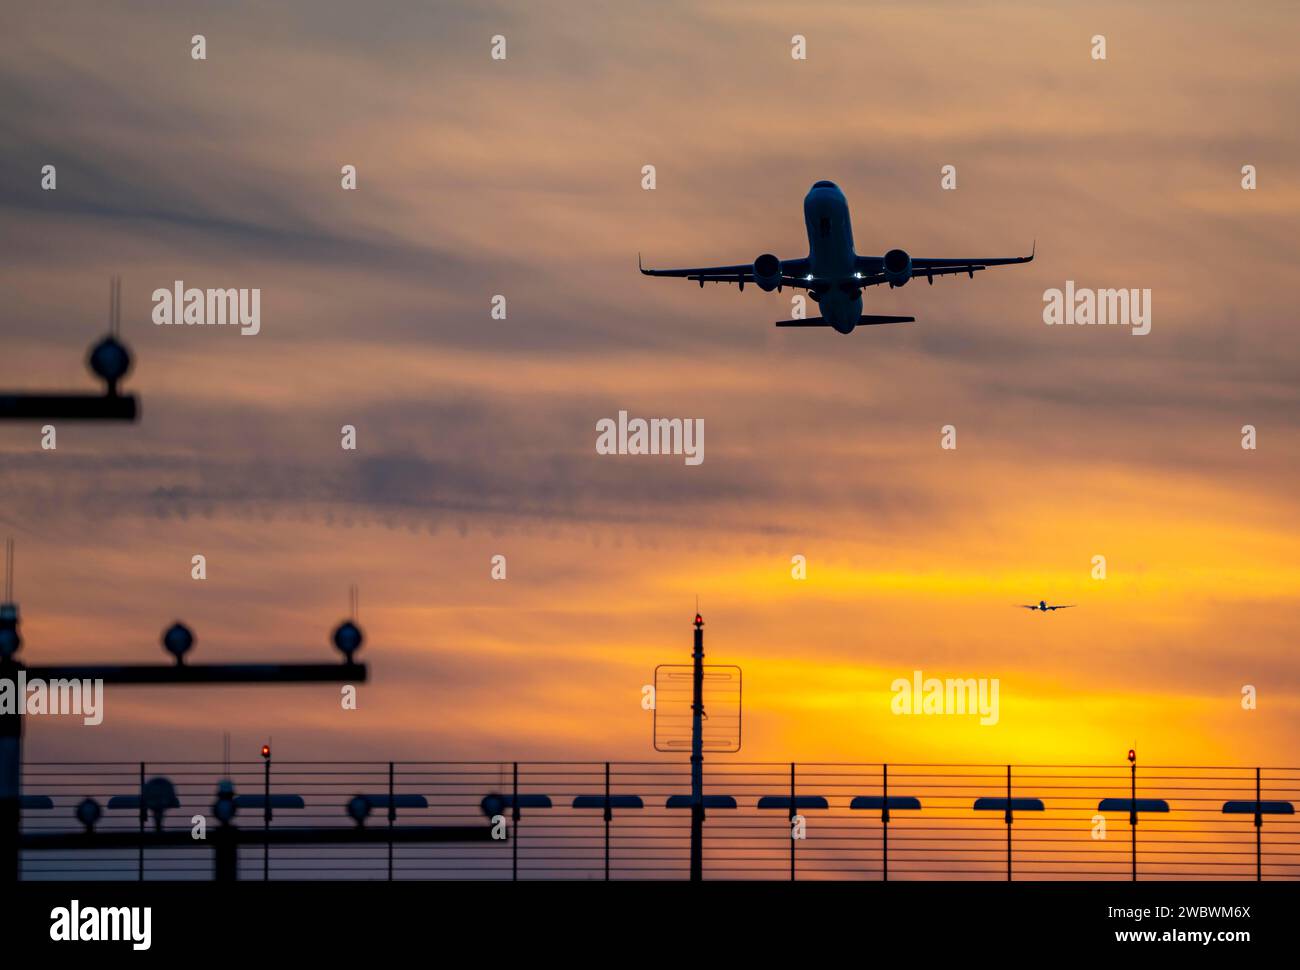 Illuminazione delle piste, ausili di avvicinamento, all'aeroporto internazionale di Düsseldorf, tramonto, decollo degli aerei e avvicinamento alla pista principale sud, 05R/23L, NR Foto Stock